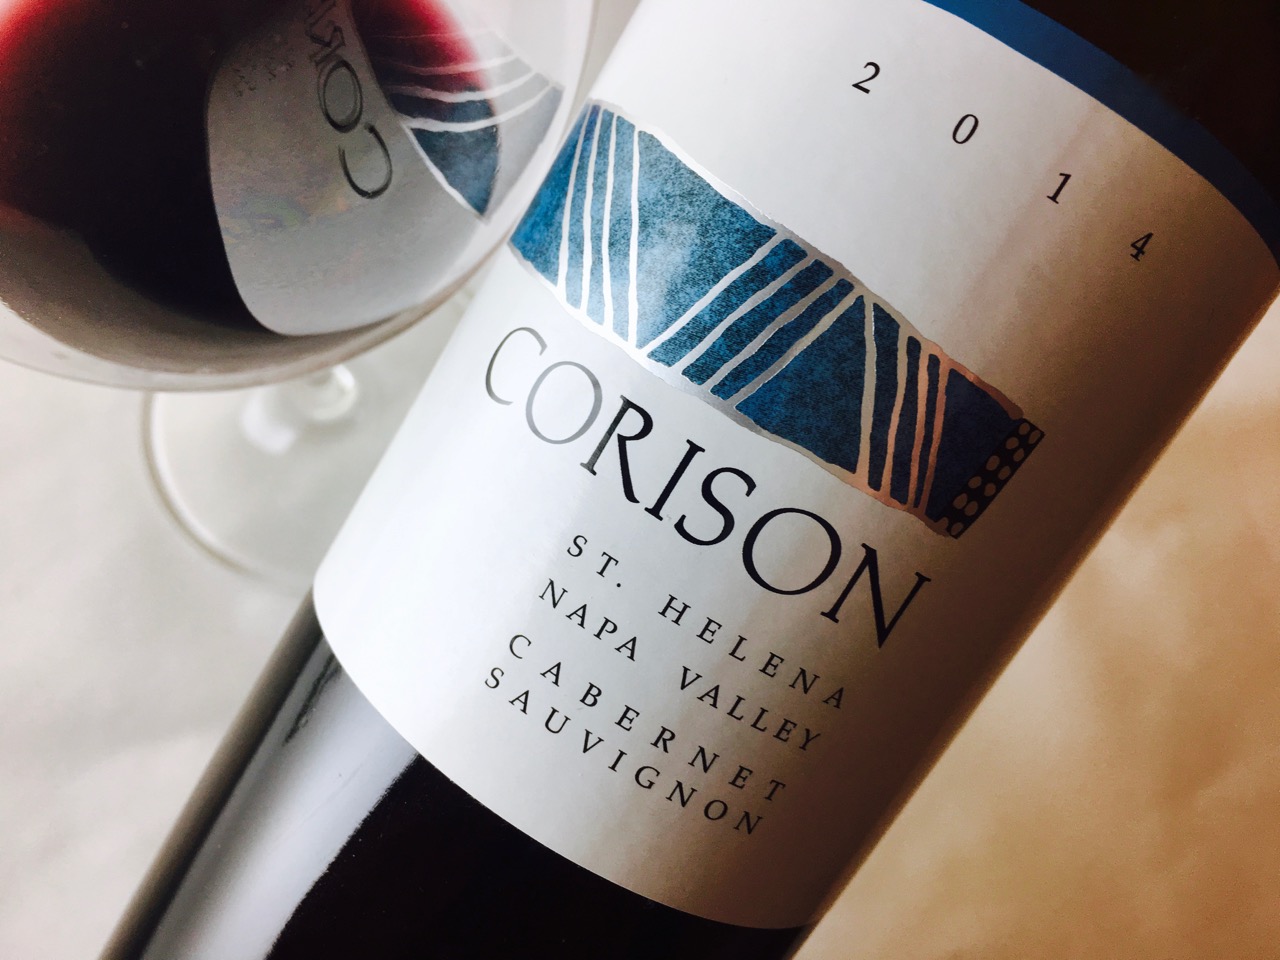 2014 Corison Winery Cabernet Sauvignon Napa Valley